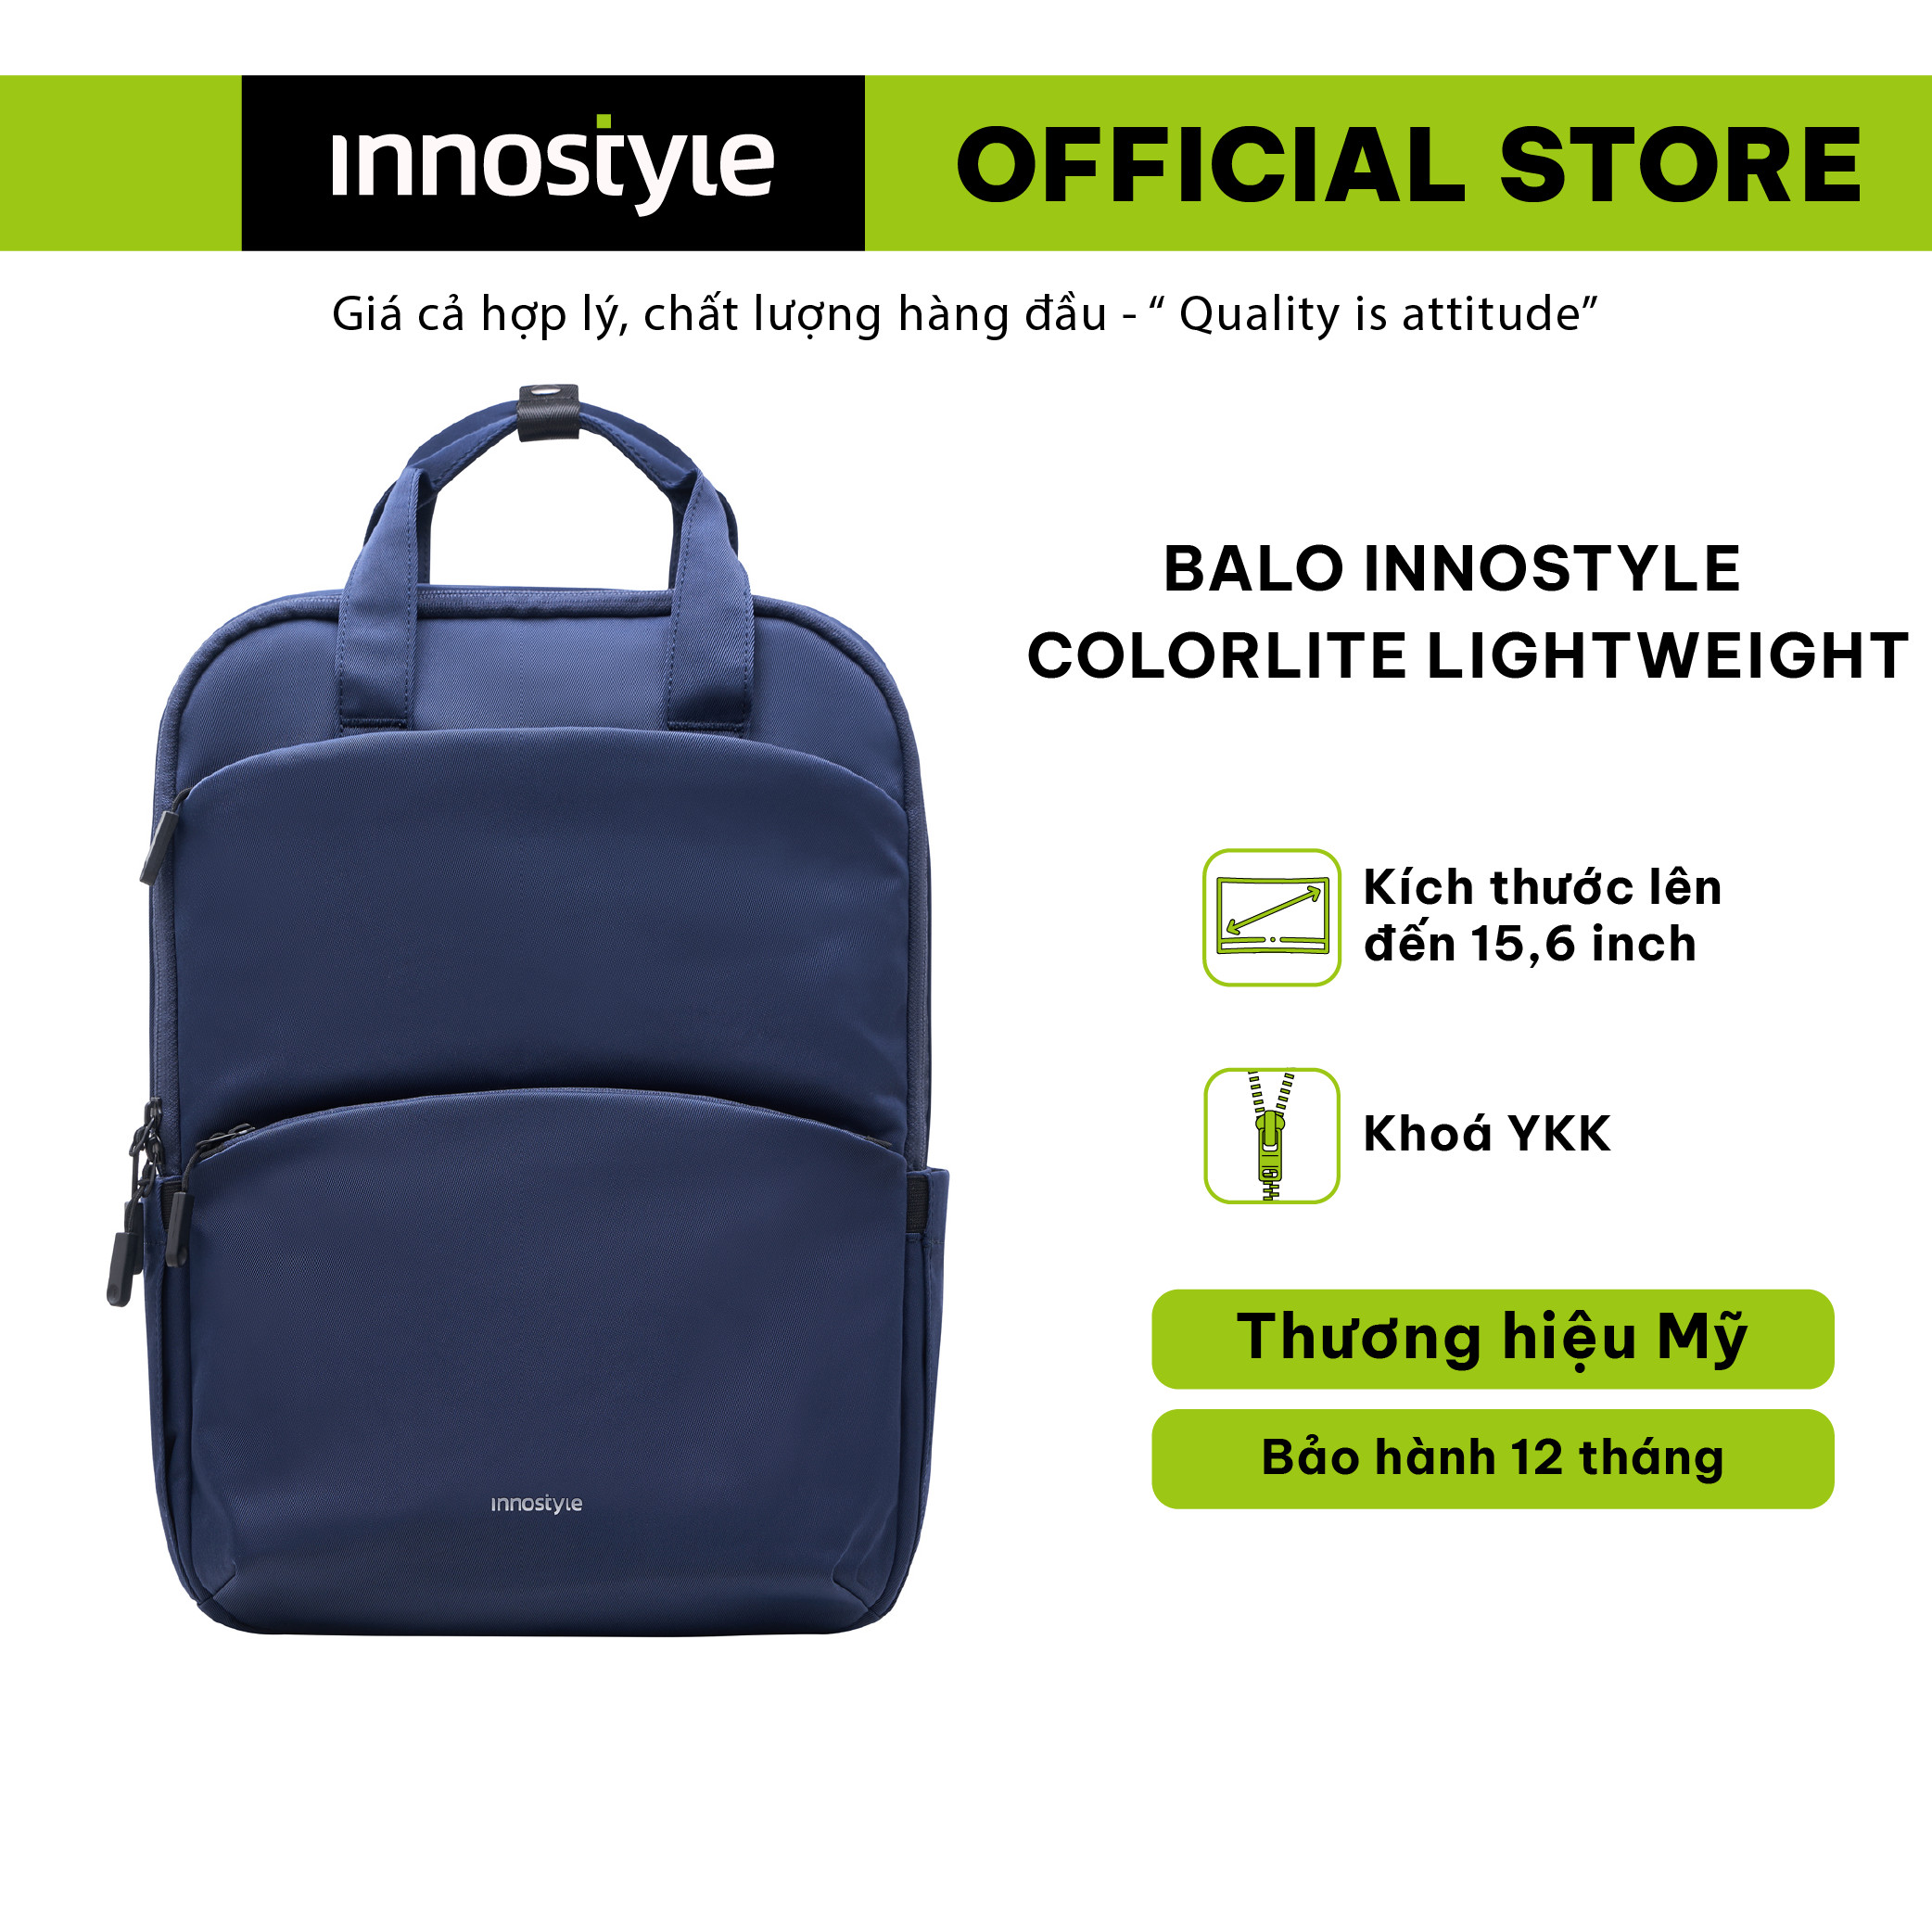 Balo Innostyle Colorlite Lightweight cho laptop 15.6 -P21- Thiết kế gọn, hàng chính hãng